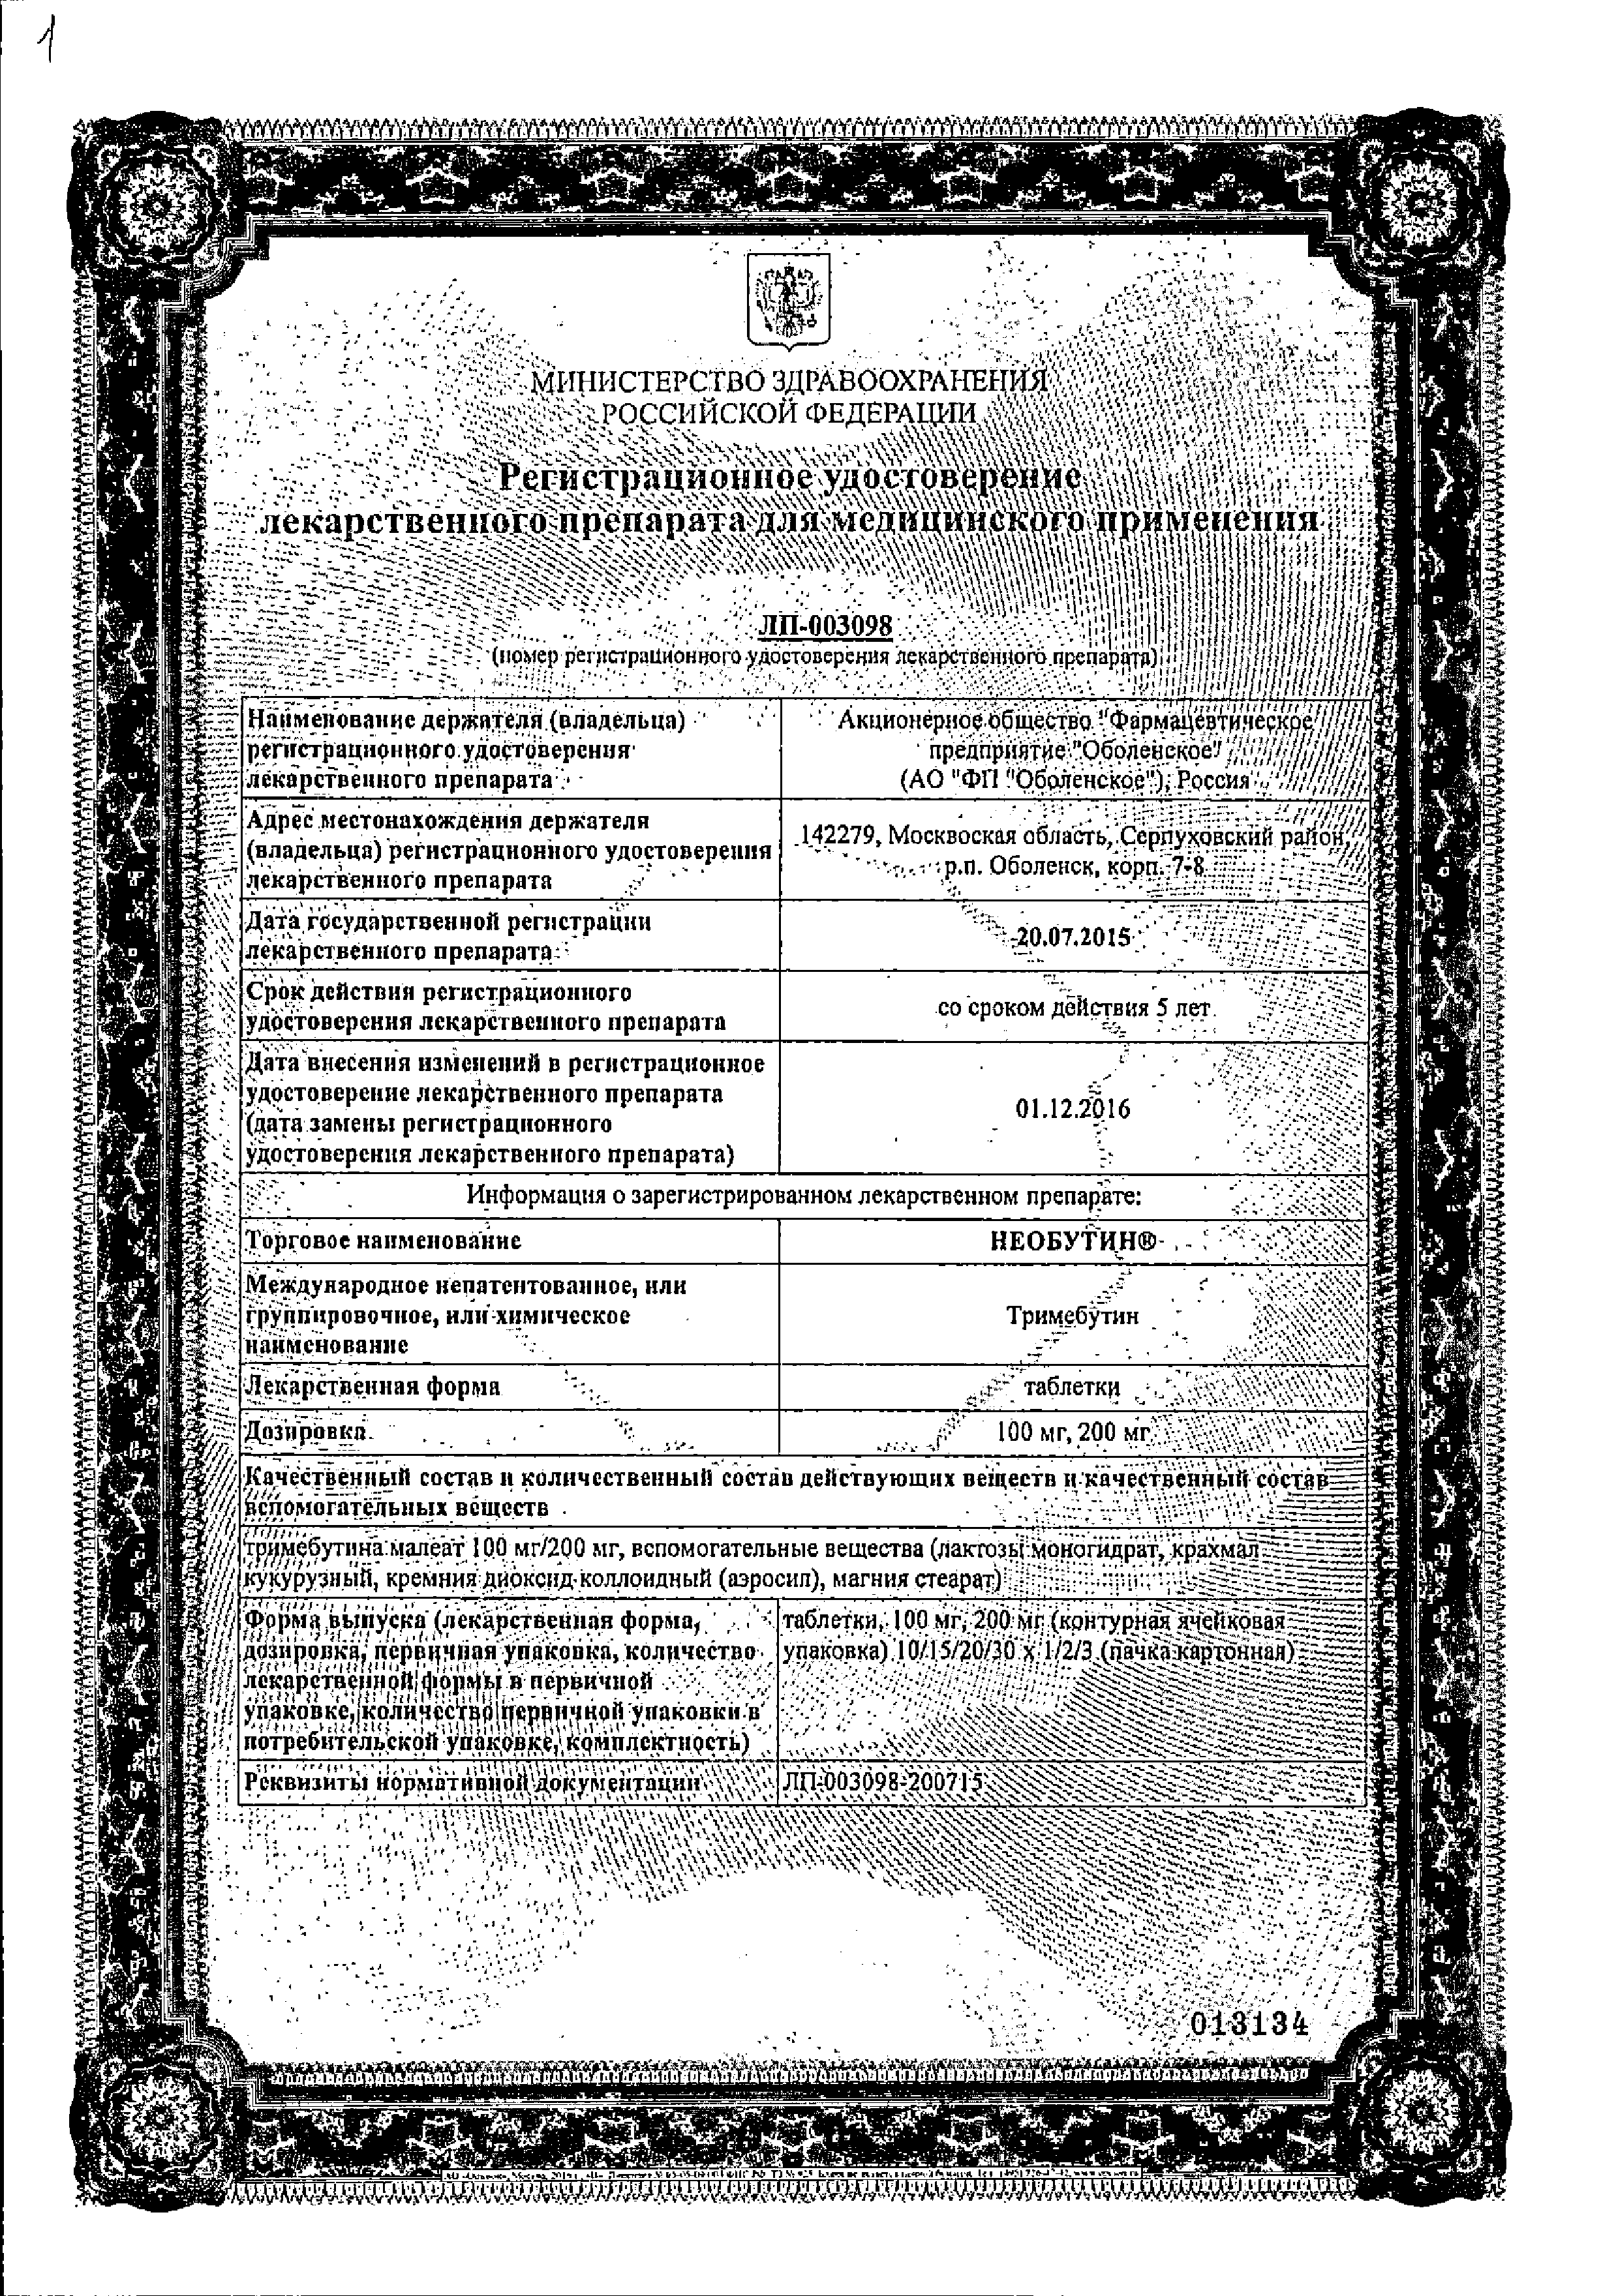 Необутин сертификат